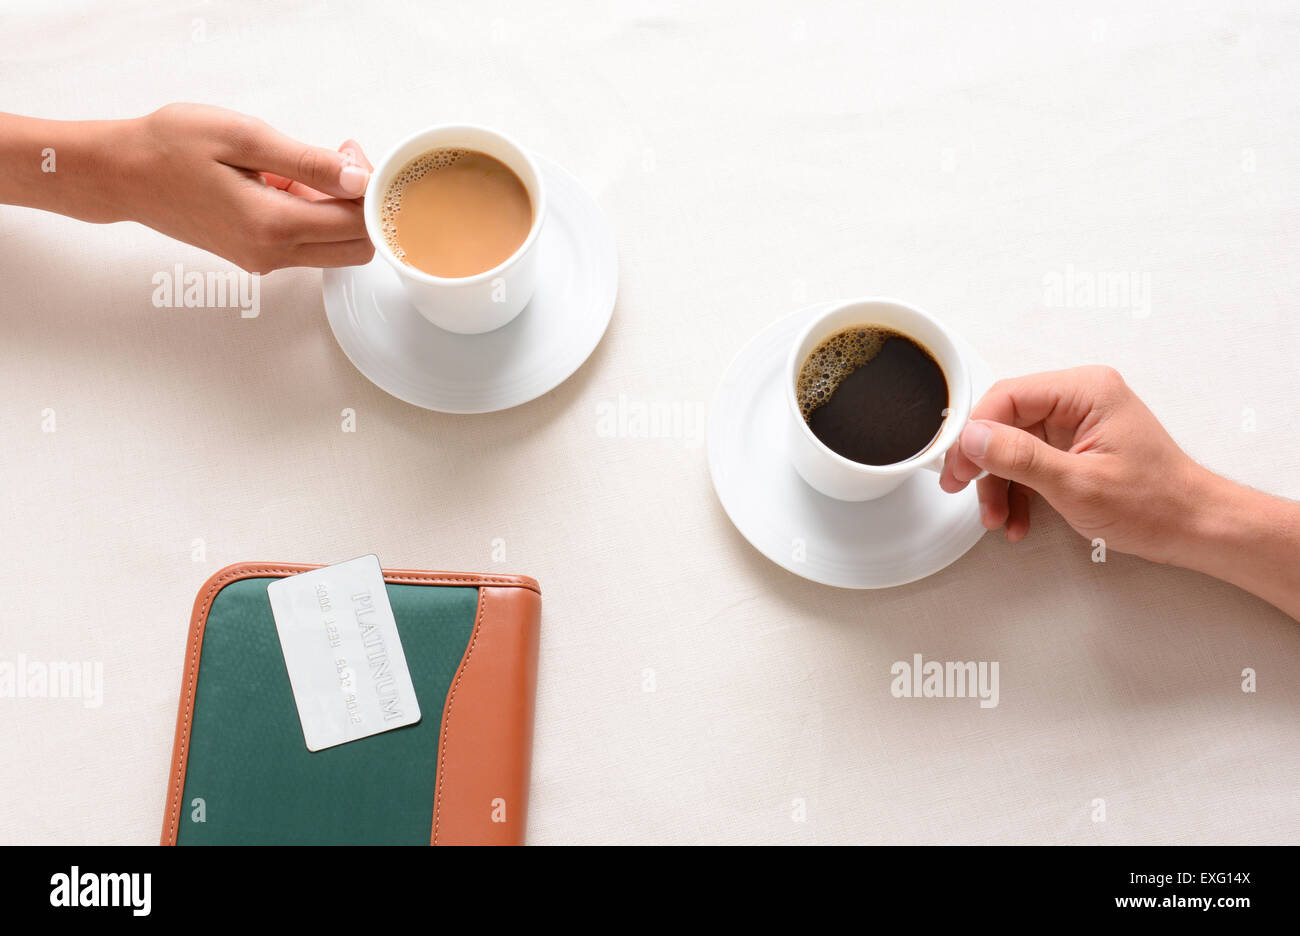 Un uomo e una donna per raggiungere il loro tazze da caffè attraverso una tabella di caffè. Overhead closeup con solo i popoli mani essendo mostrato. Foto Stock